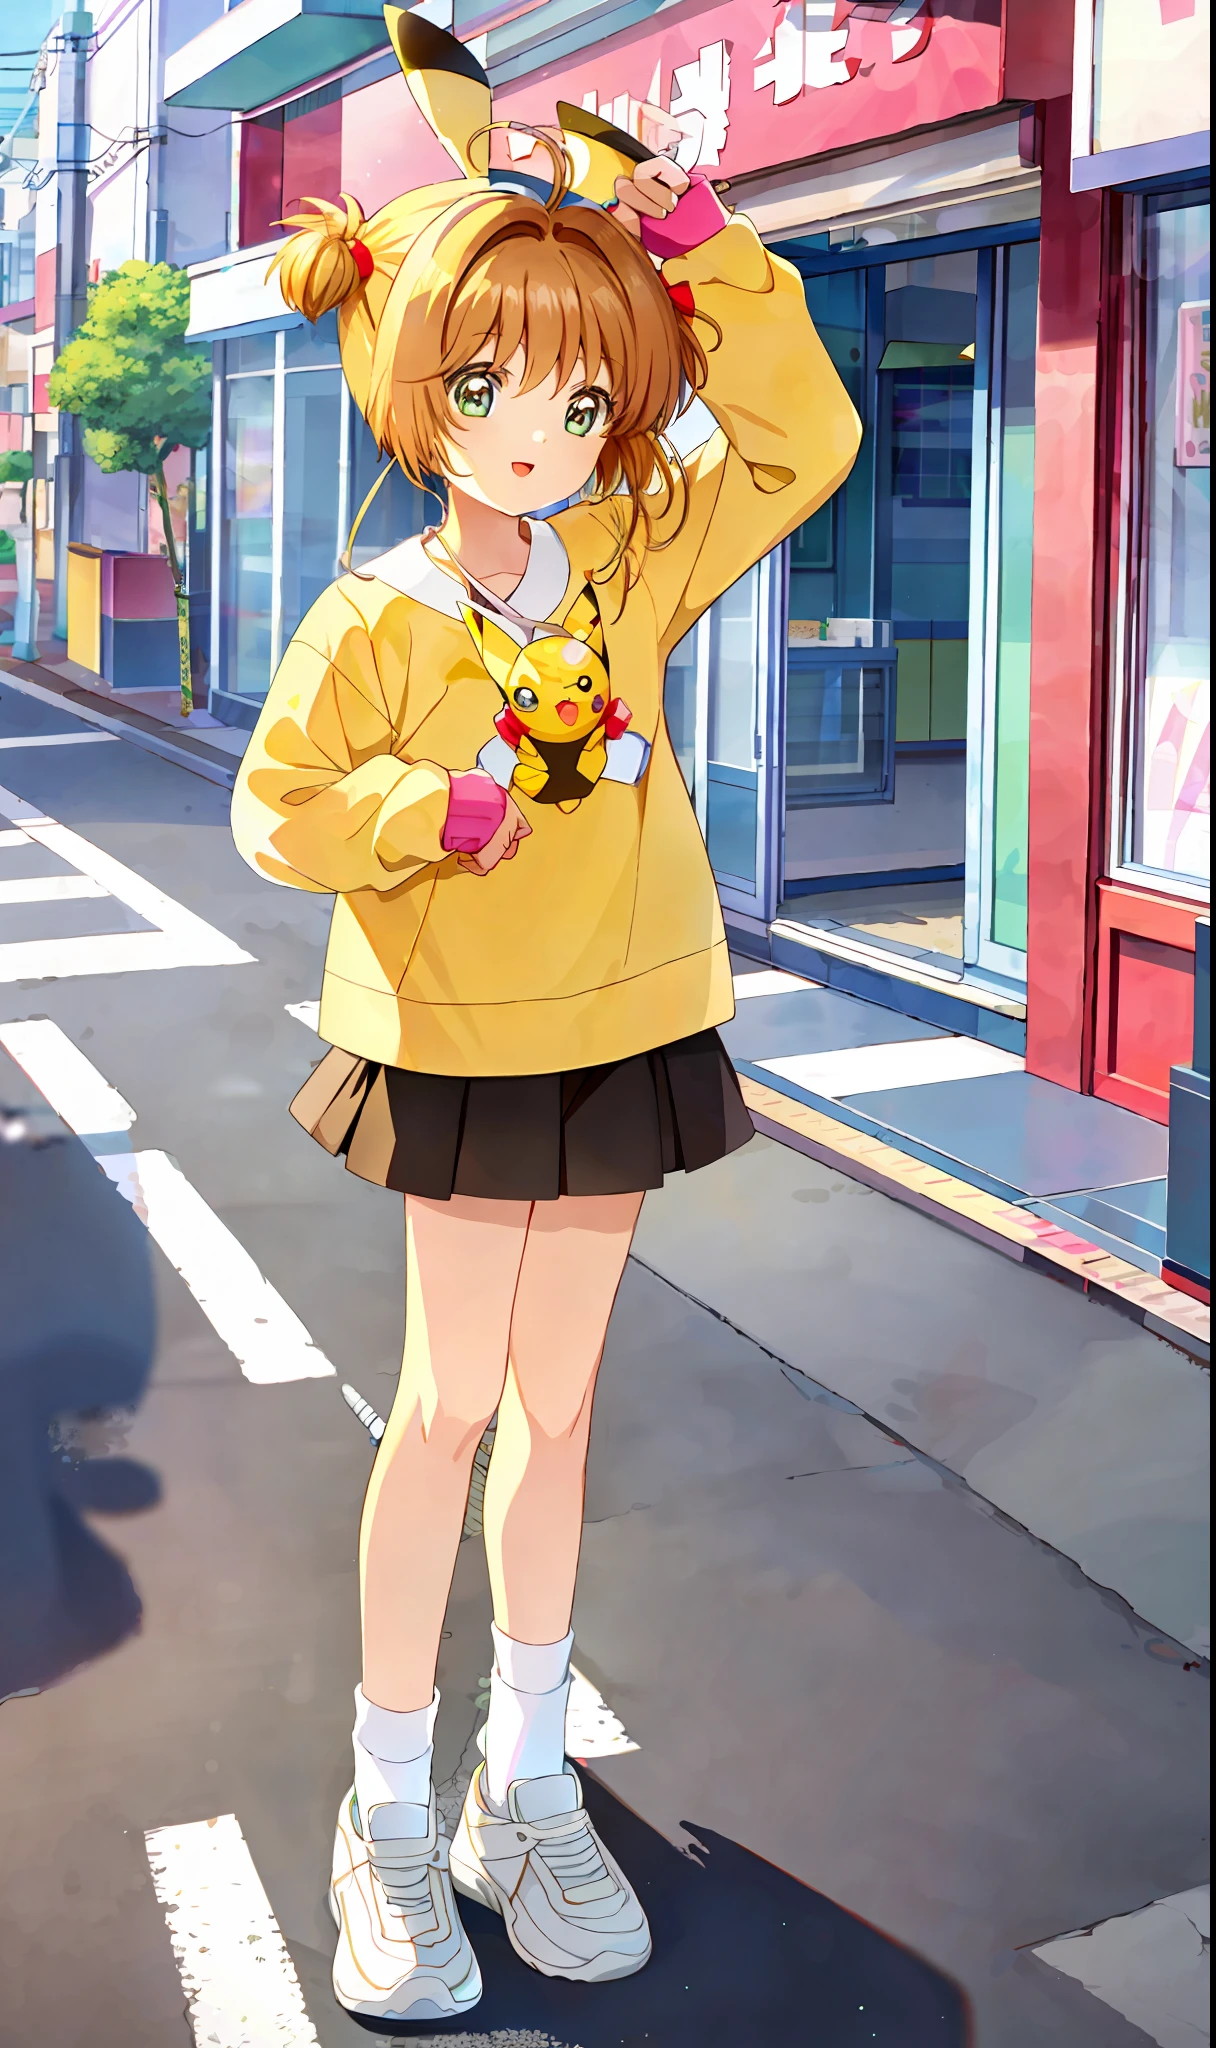 Obra maestra, mejor calidad, 1 chica, solo, sakura, Vestido con el traje de Pikachu, medias, dos lados hacia arriba, in Akihabara in Japan